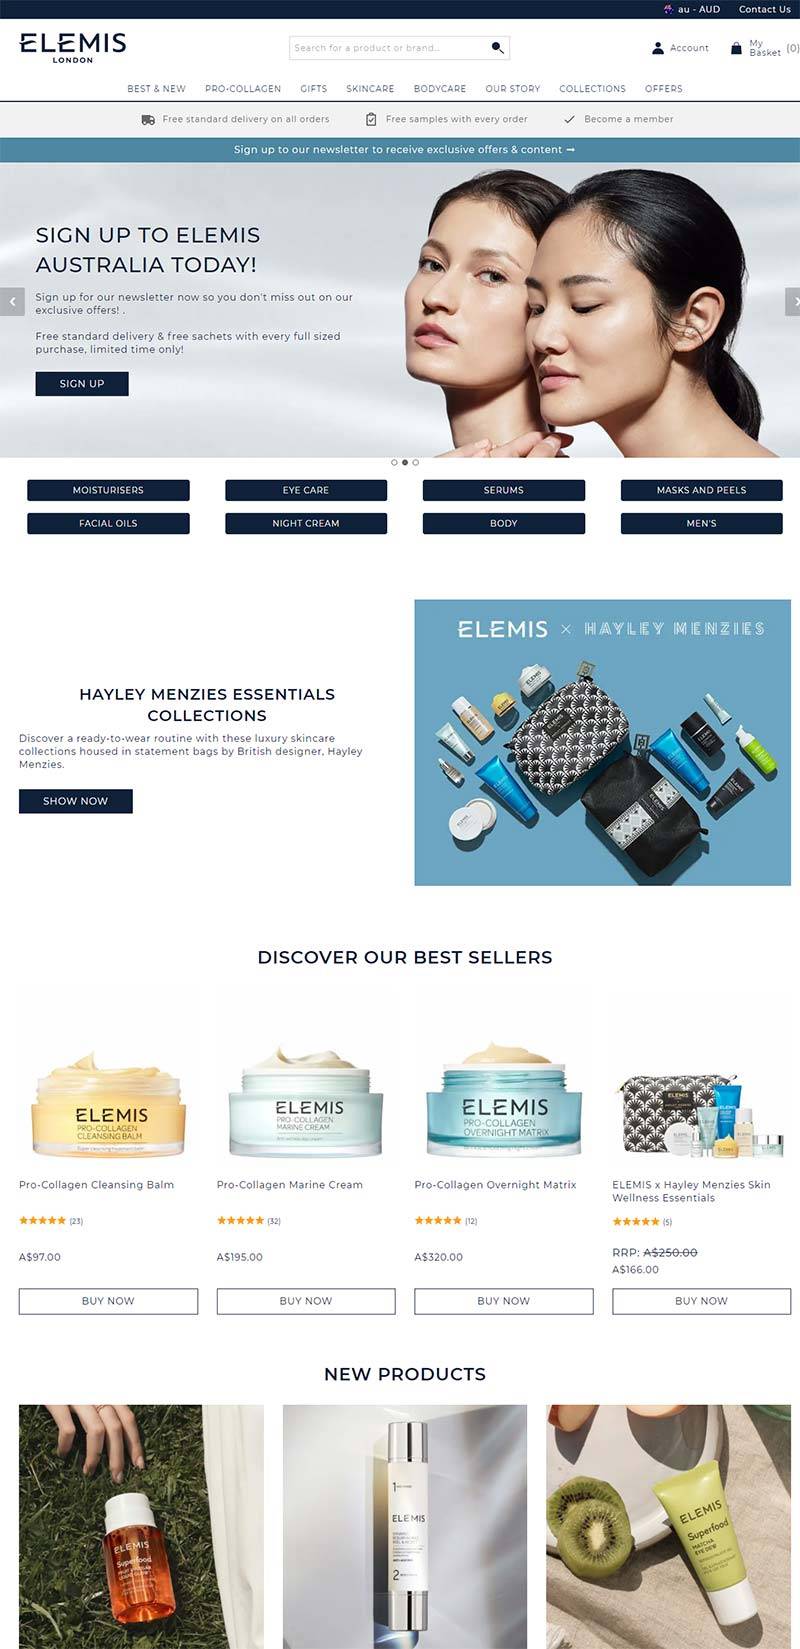 ELEMIS AU 英国奢华护肤品牌澳大利亚官网